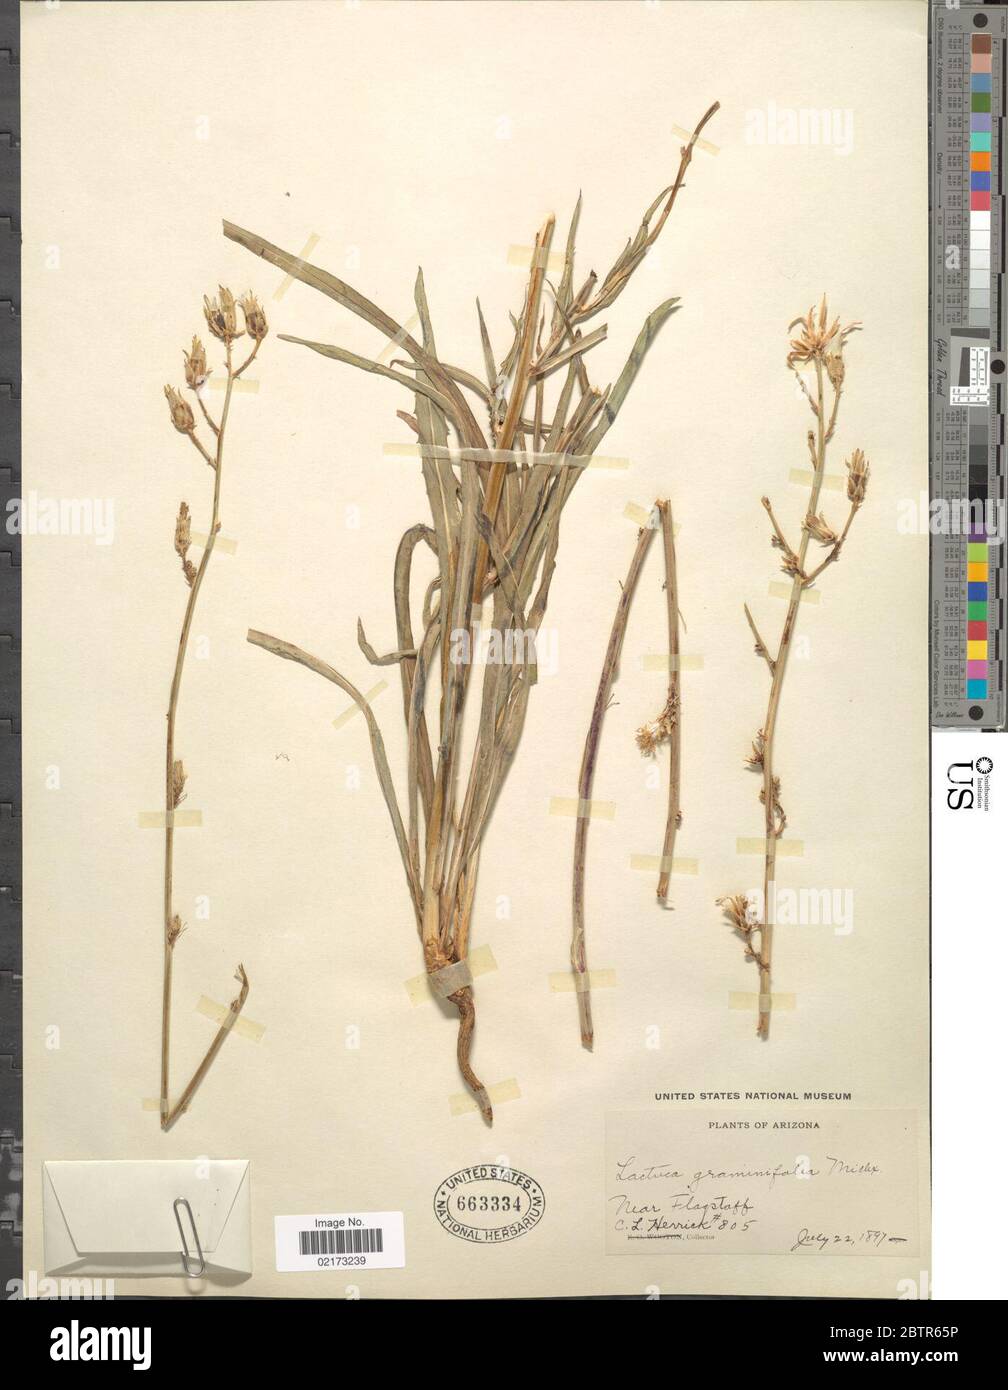 Lactuca graminifolia Michx. Stock Photo